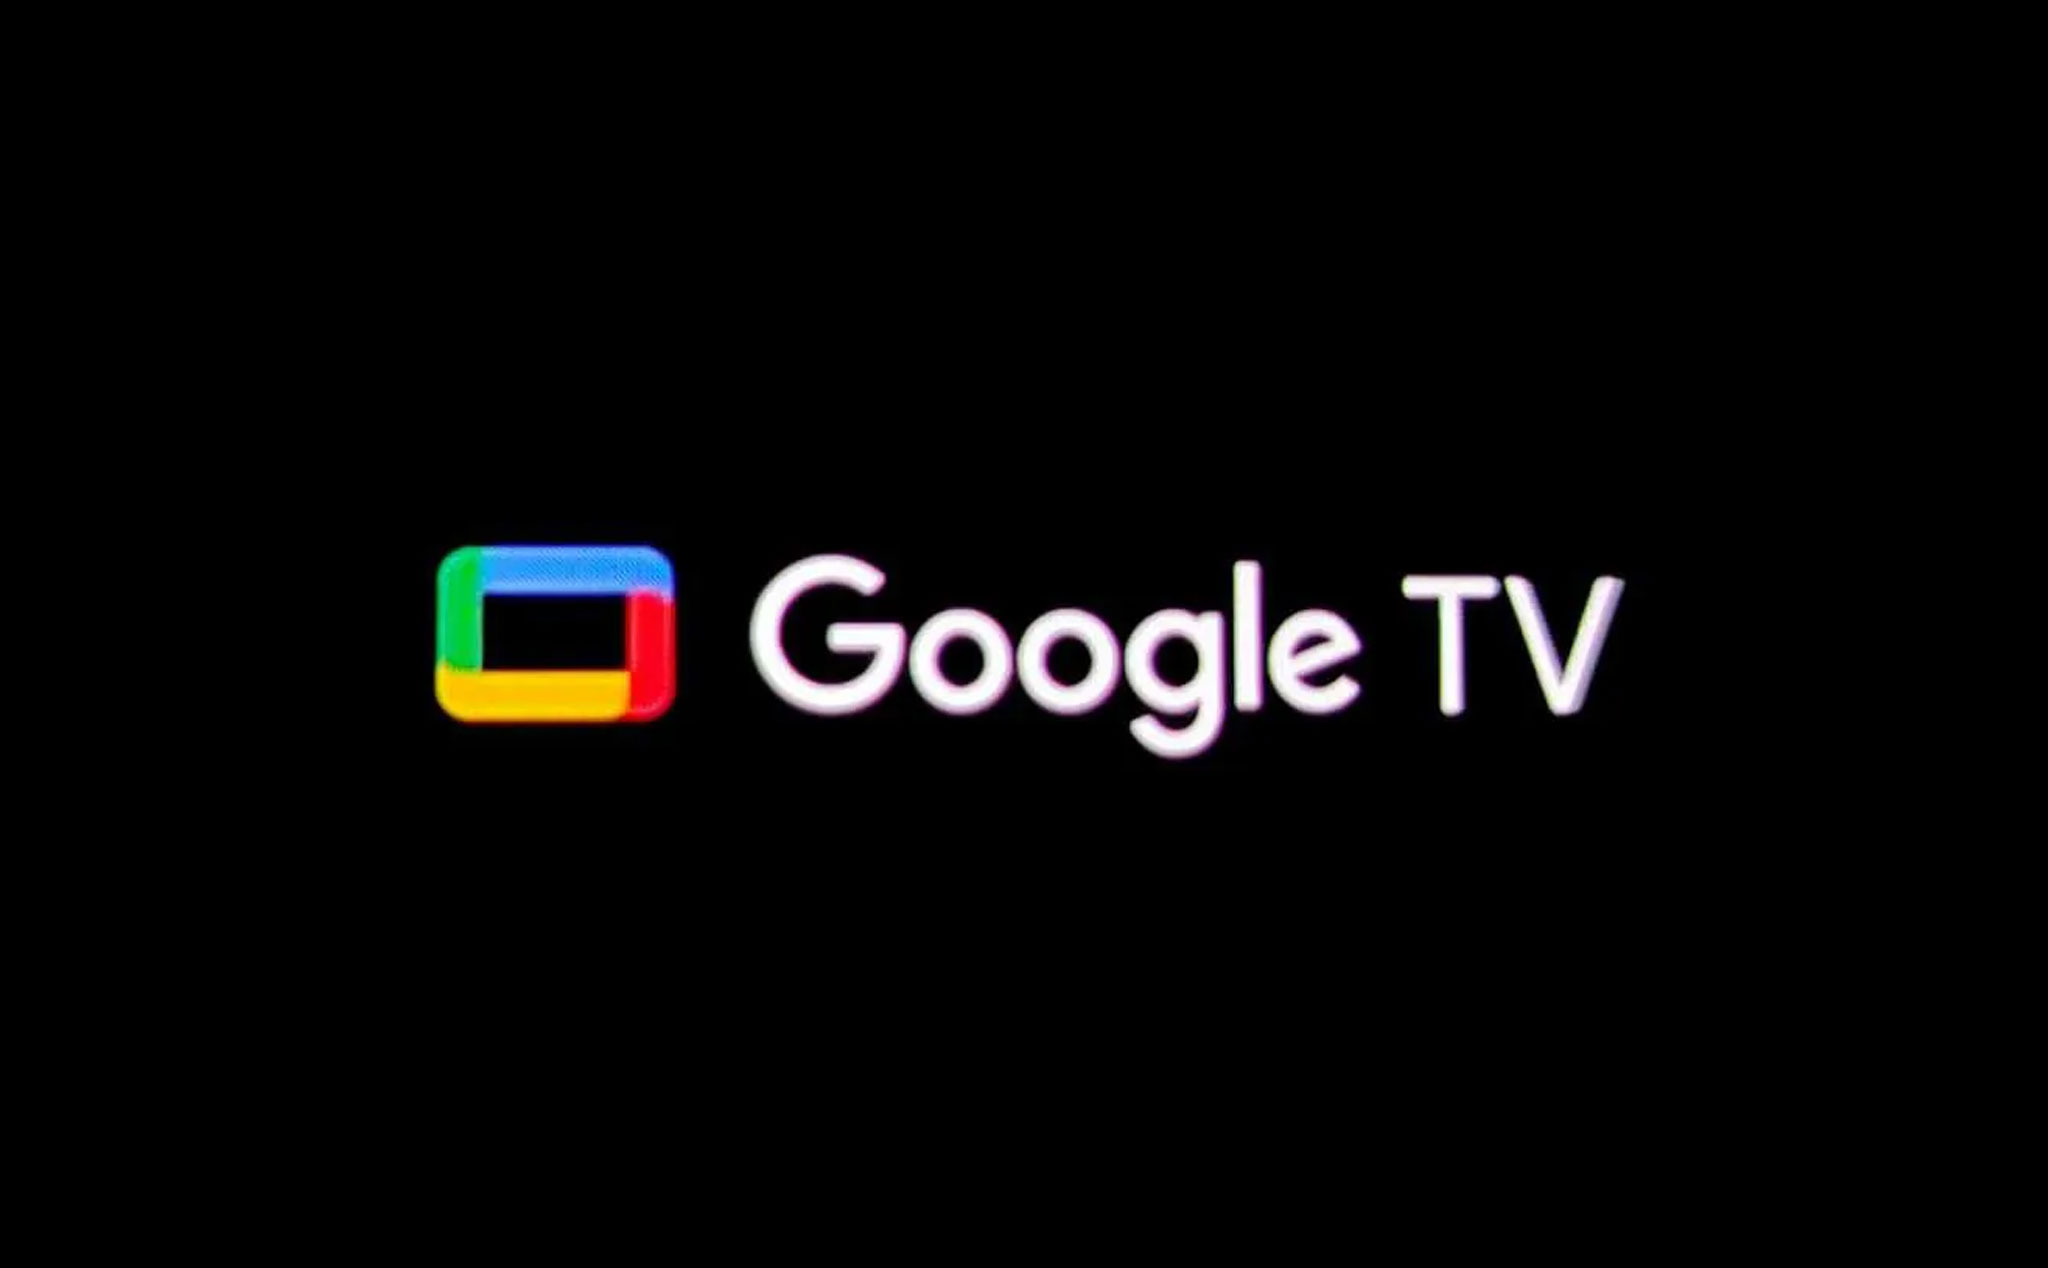 Google cuối cùng cũng tích hợp hồ sơ người dùng lên Google TV